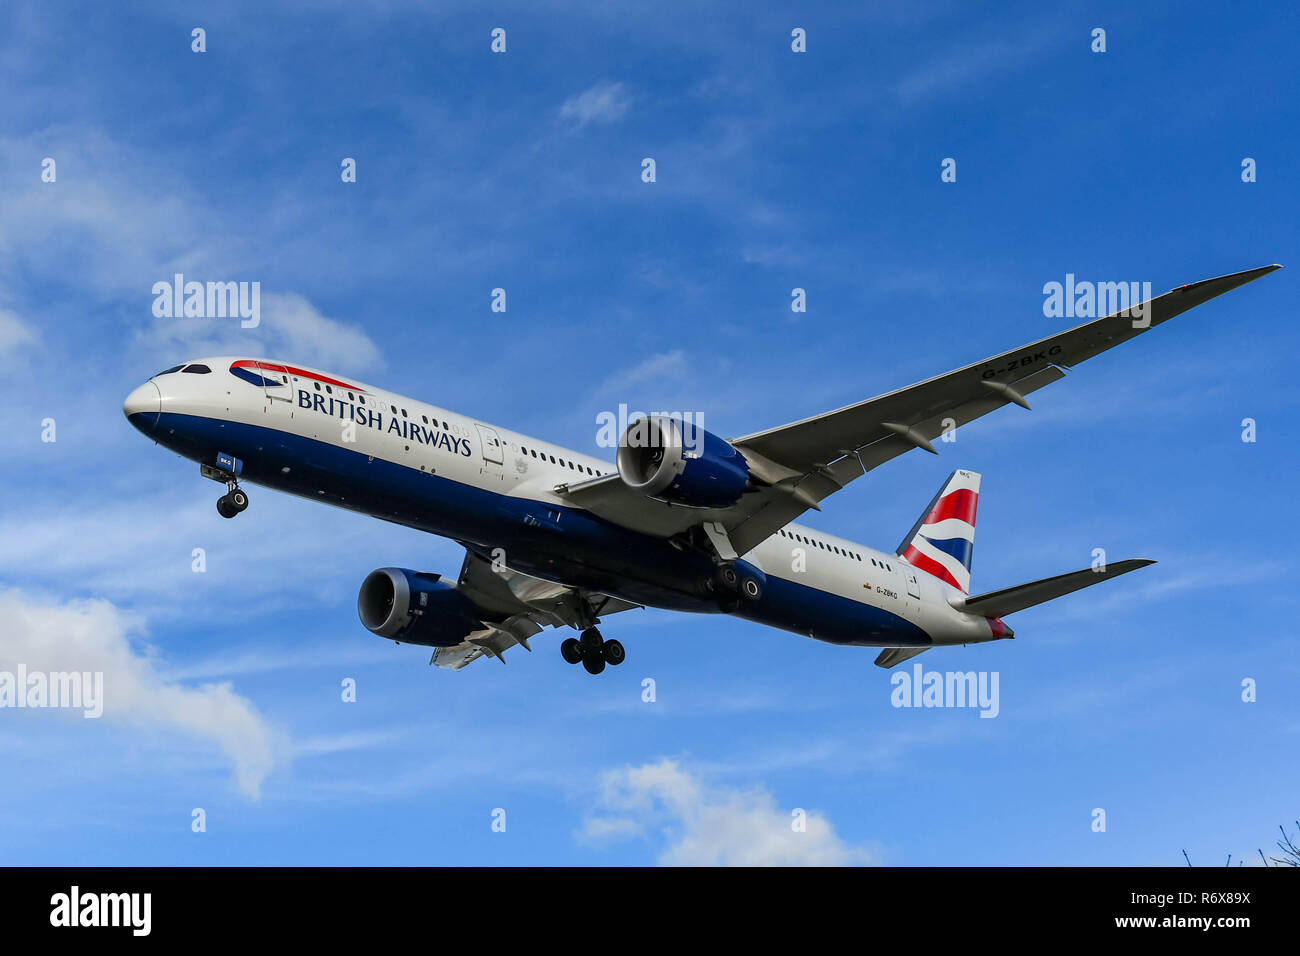 Londres, ANGLETERRE - NOVEMBRE 2018 : British Airways Boeing 787 Dreamliner jet entrée en terre à l'aéroport Heathrow de Londres. Banque D'Images